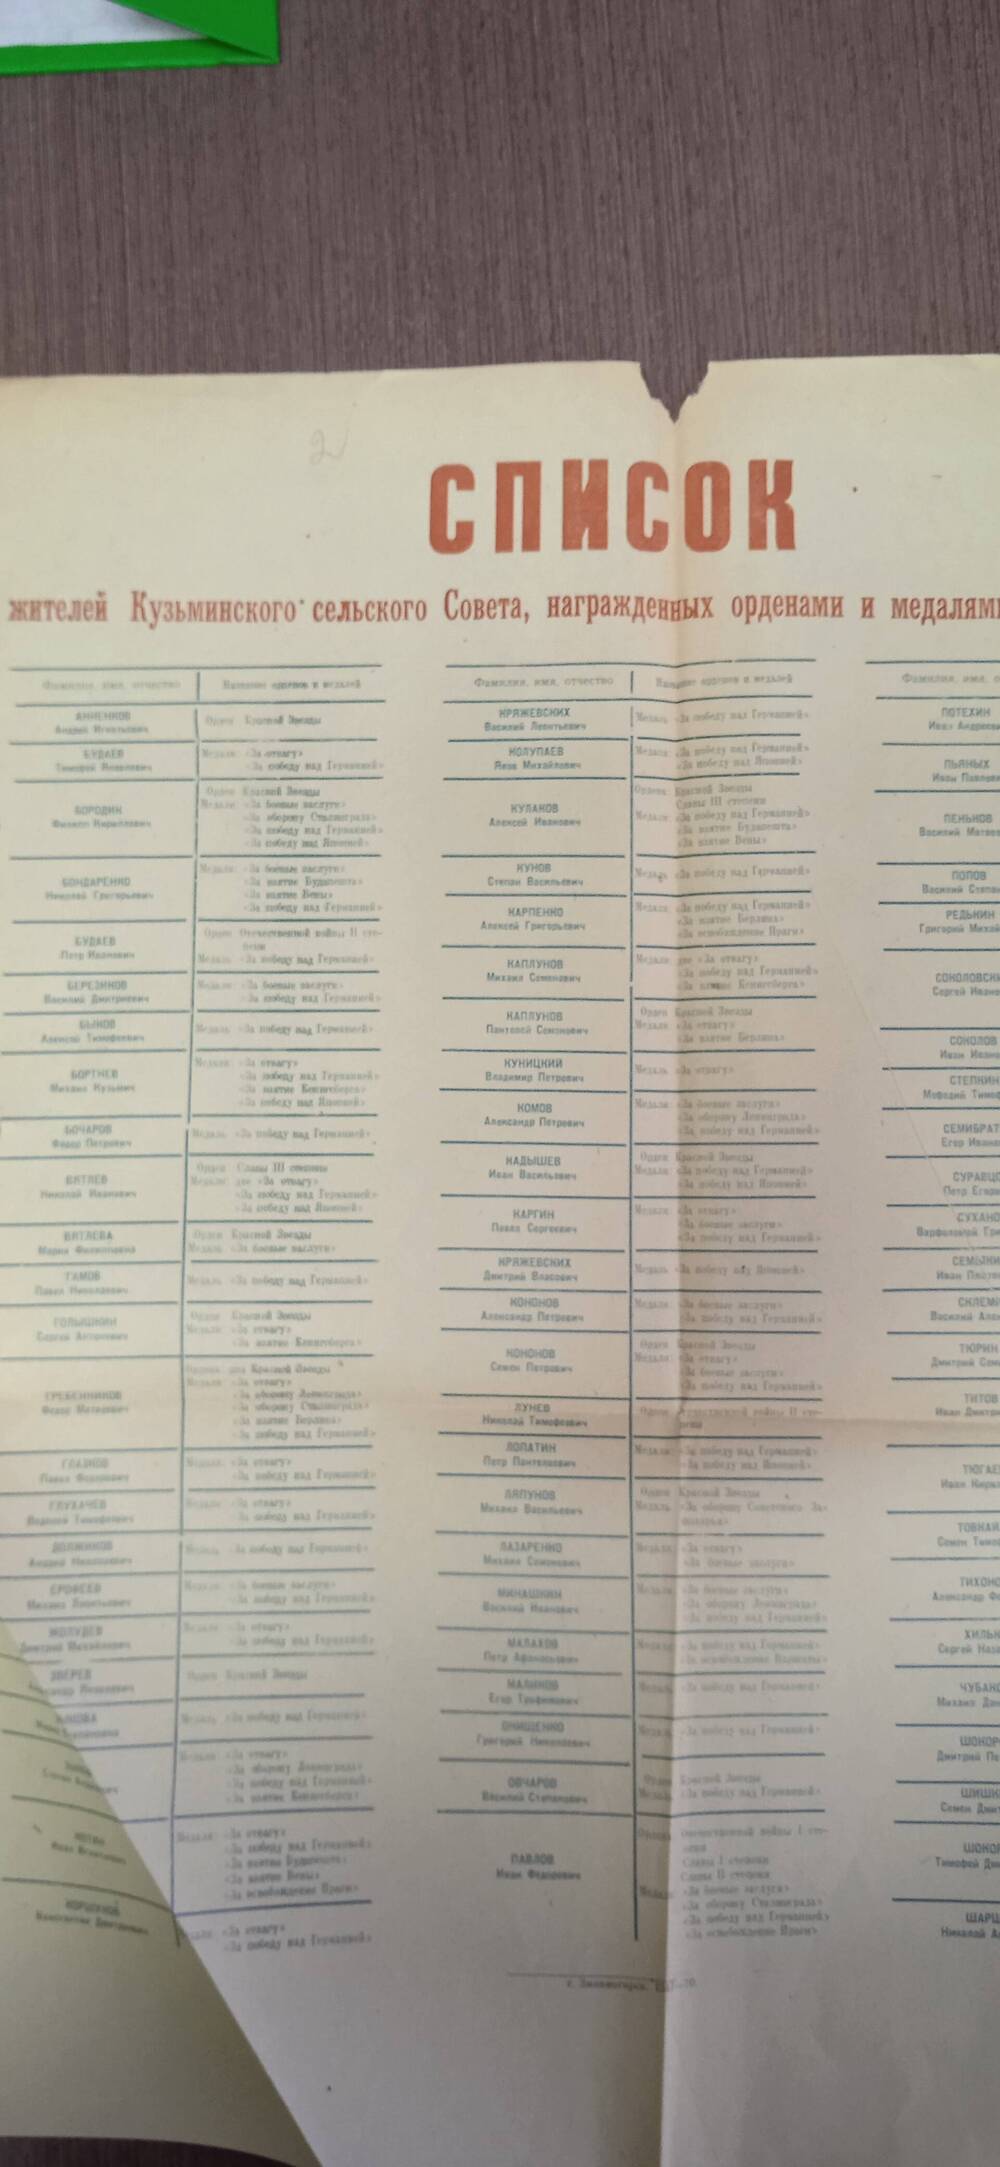 Список жителей Кузьминского сельского Совета, награжденных орденами и медалями за боевые заслуги.